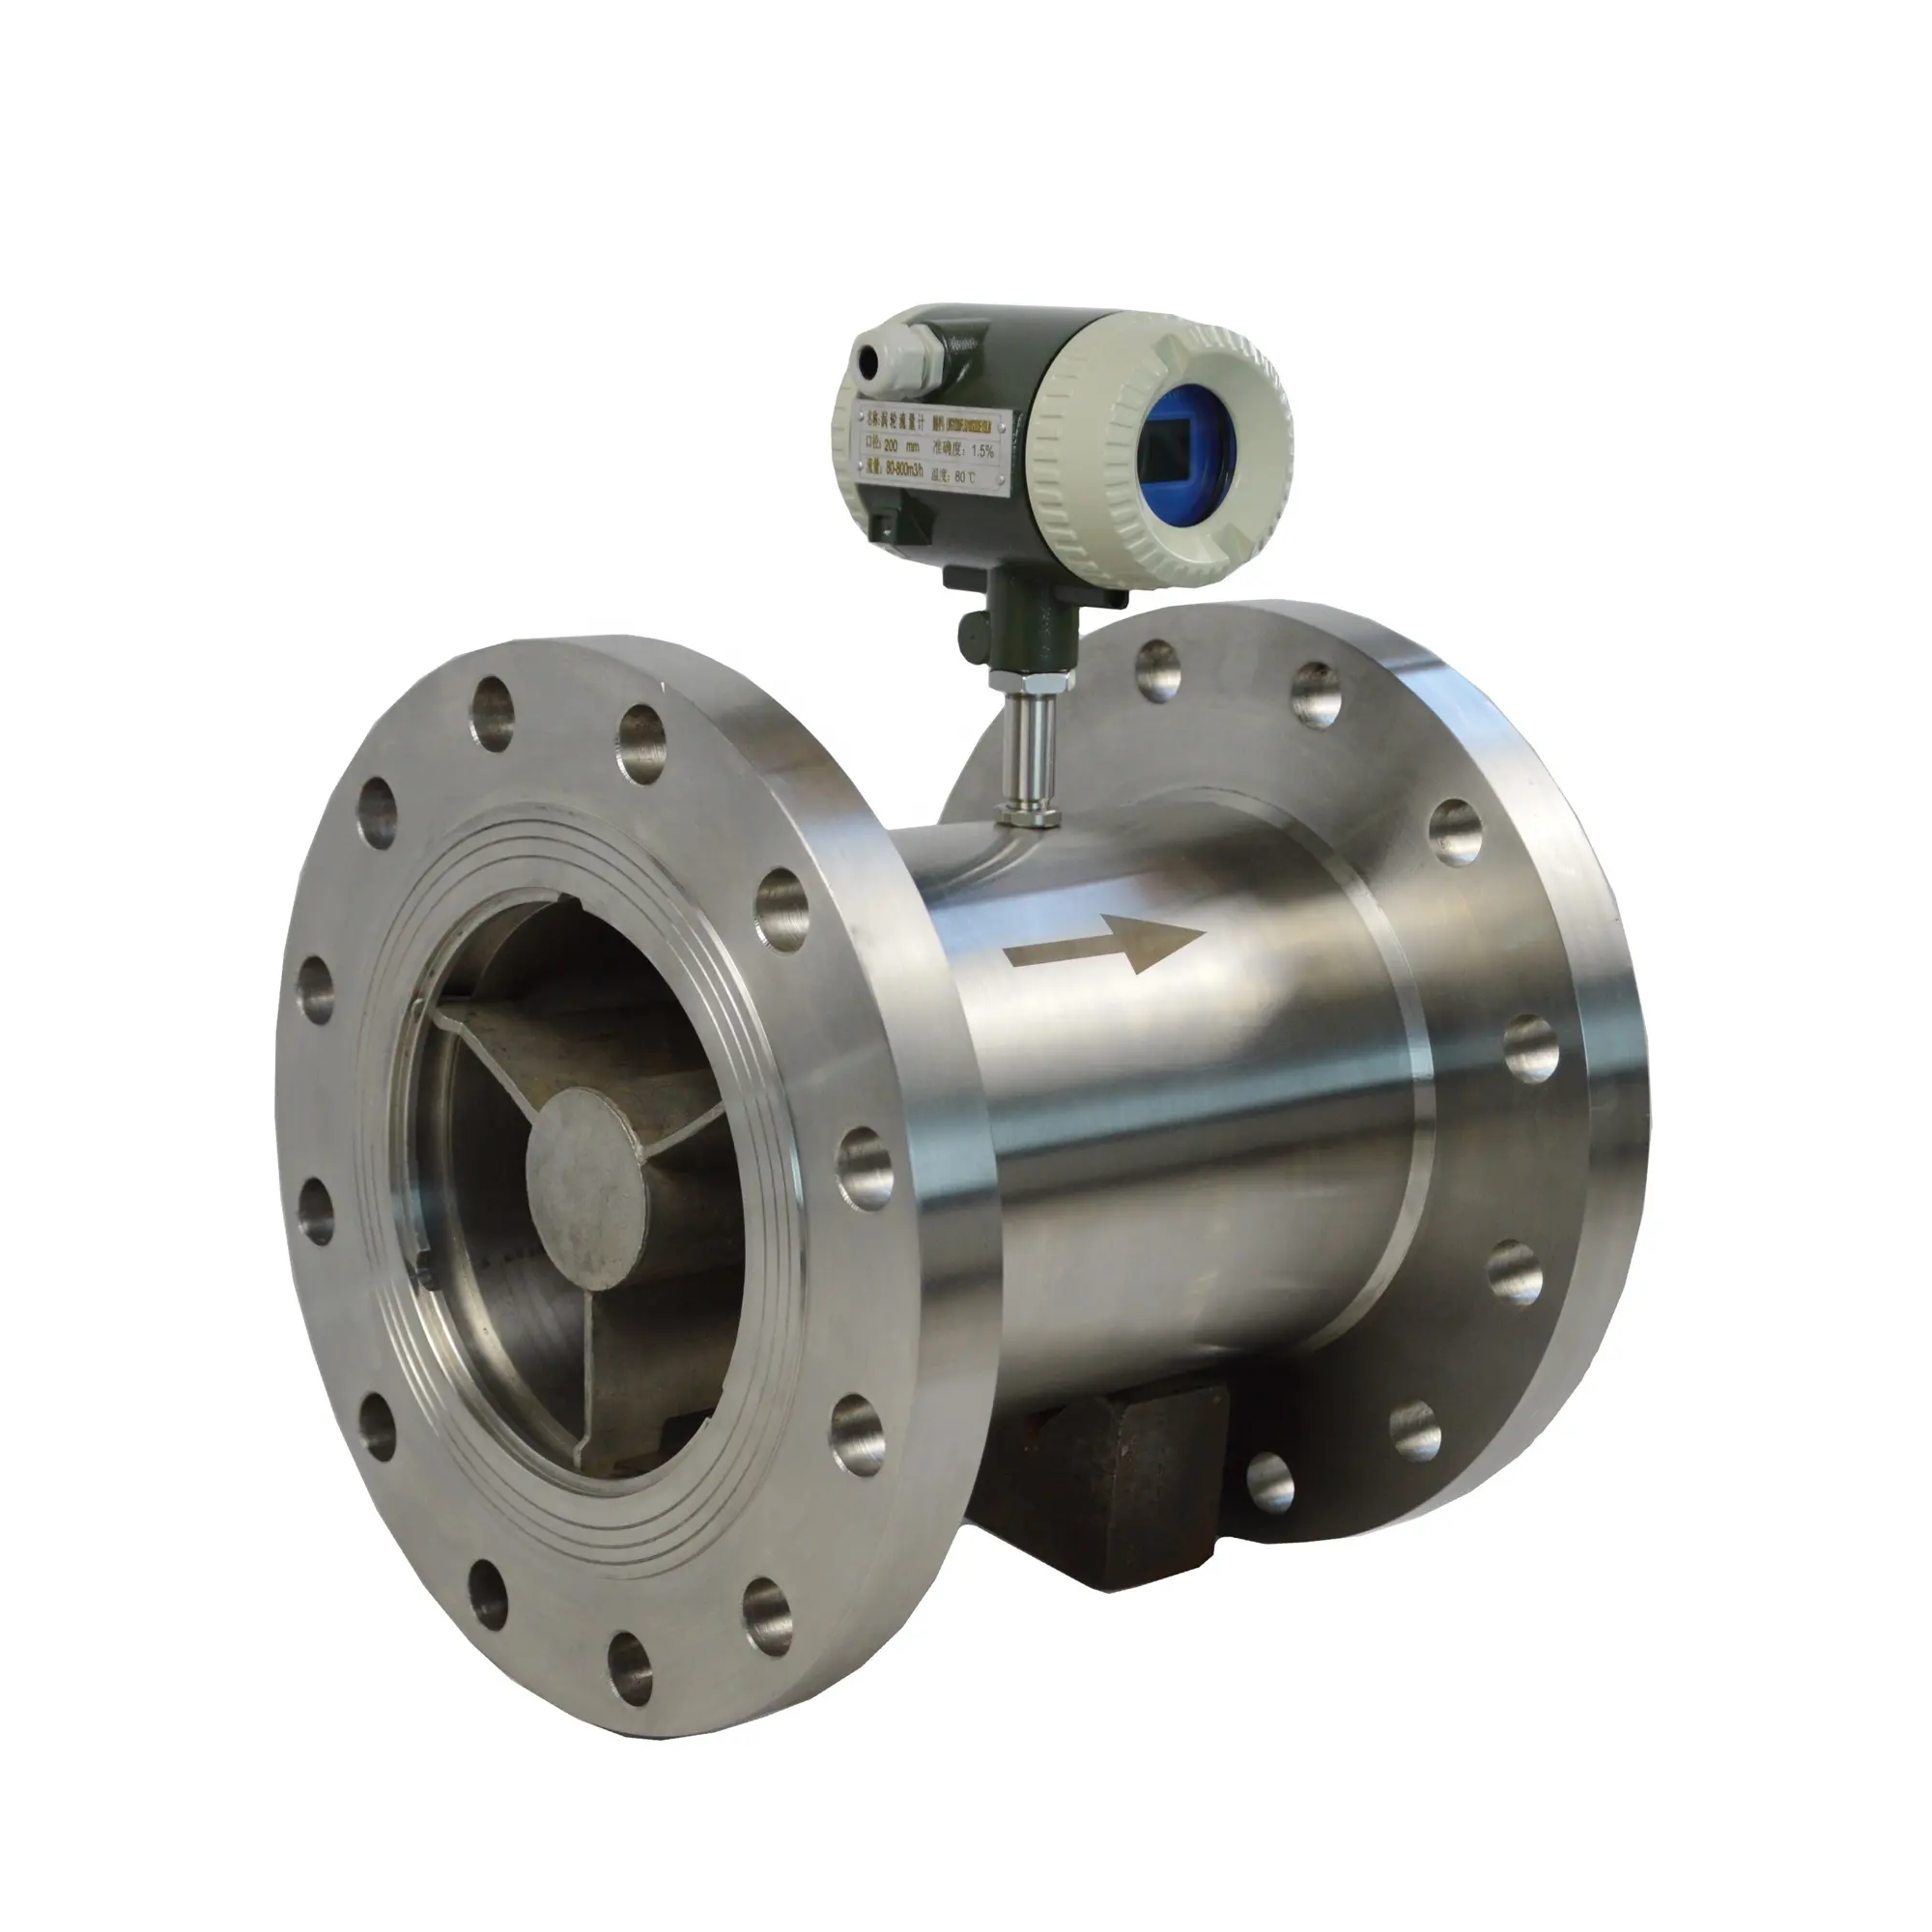 8 inch diesel oil fuel volume turbine flow meter mechanical DN200 304 stainless steel pipe price per water flow meter